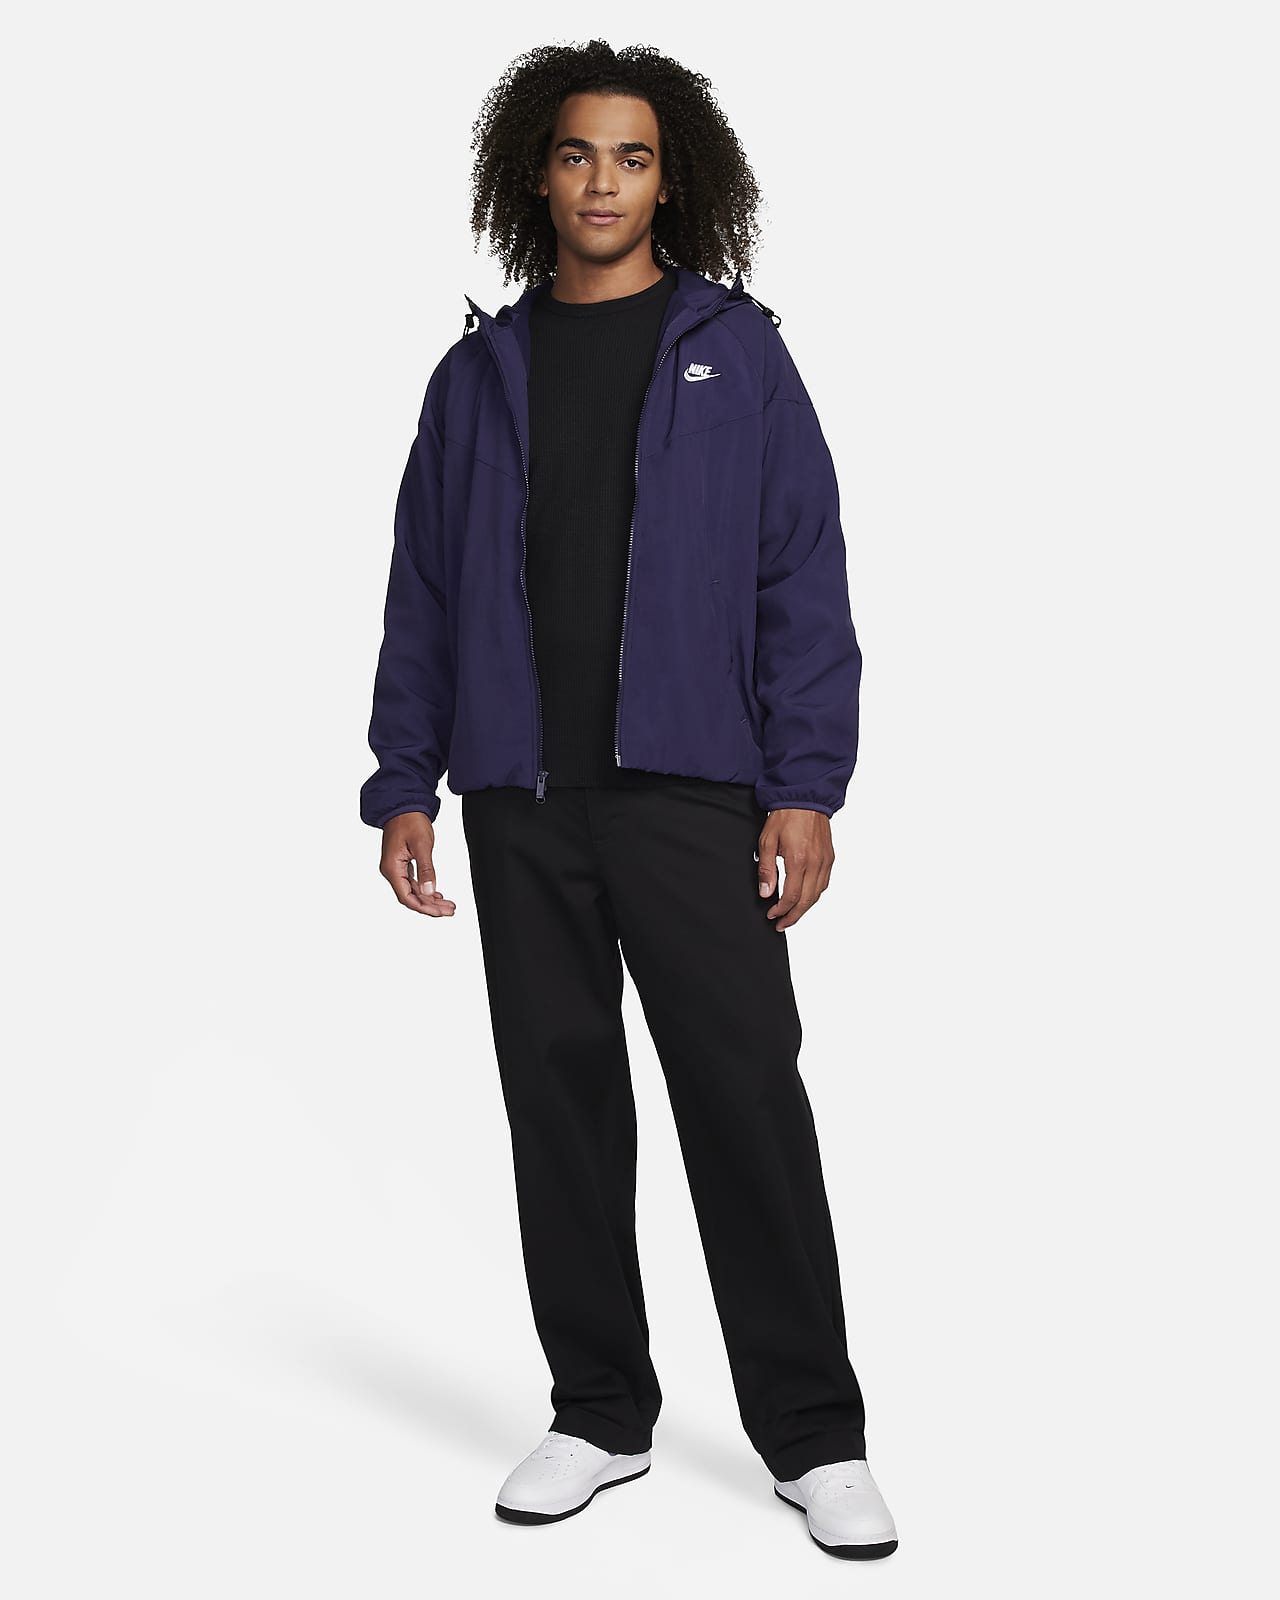 Nike Sportswear Windrunner Men's Loose Hooded Jacket. Nike LU